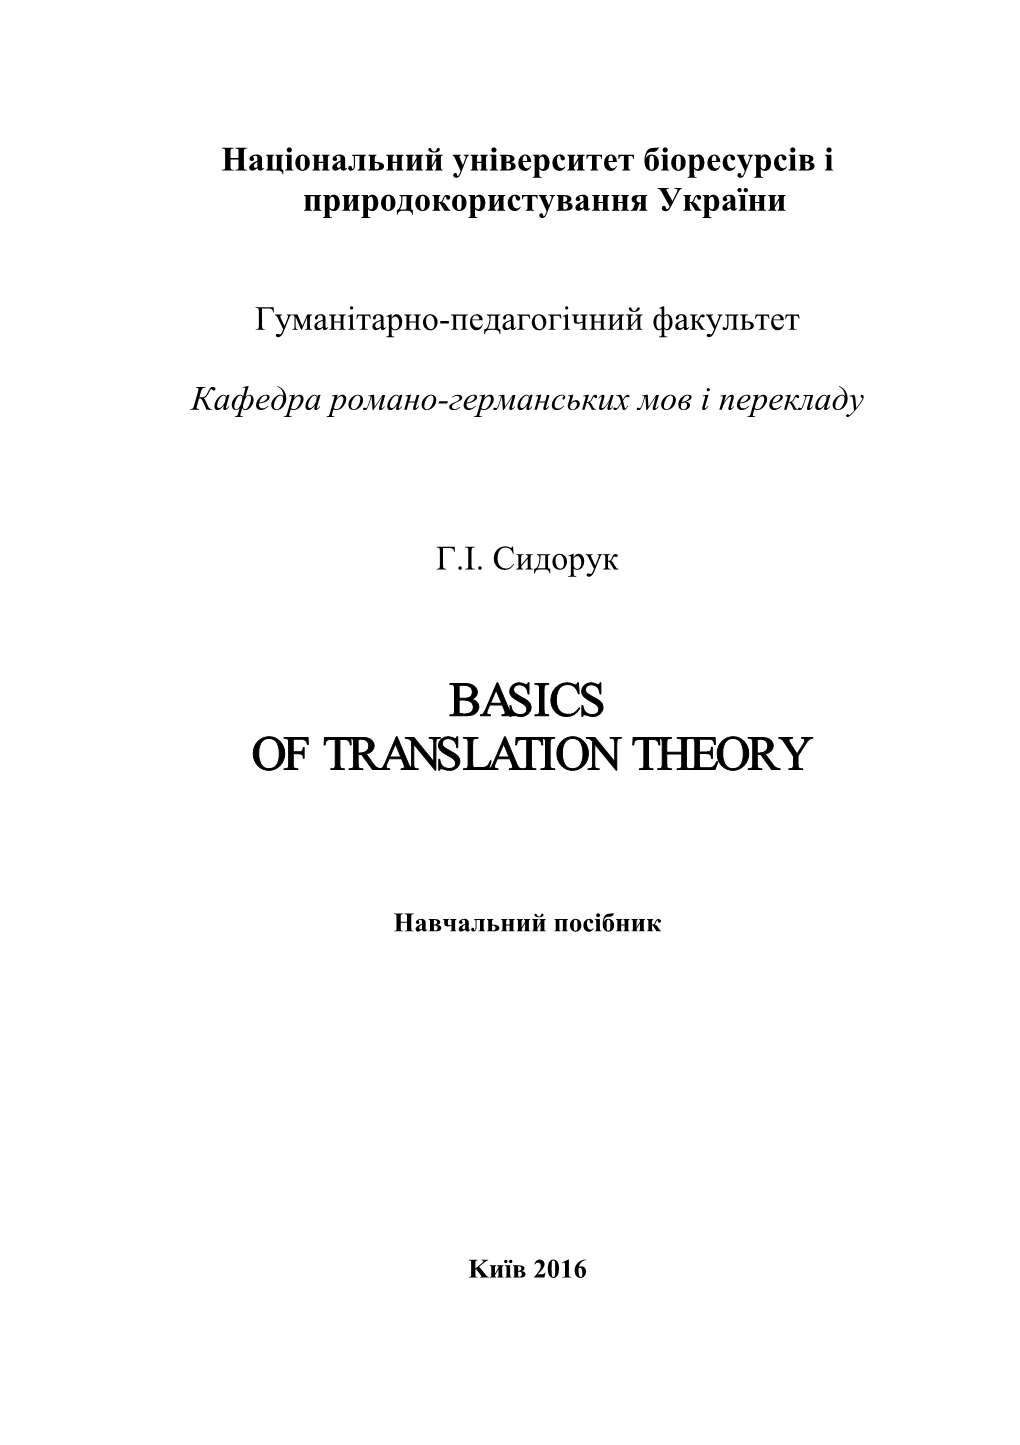 Basics of Translation Theory